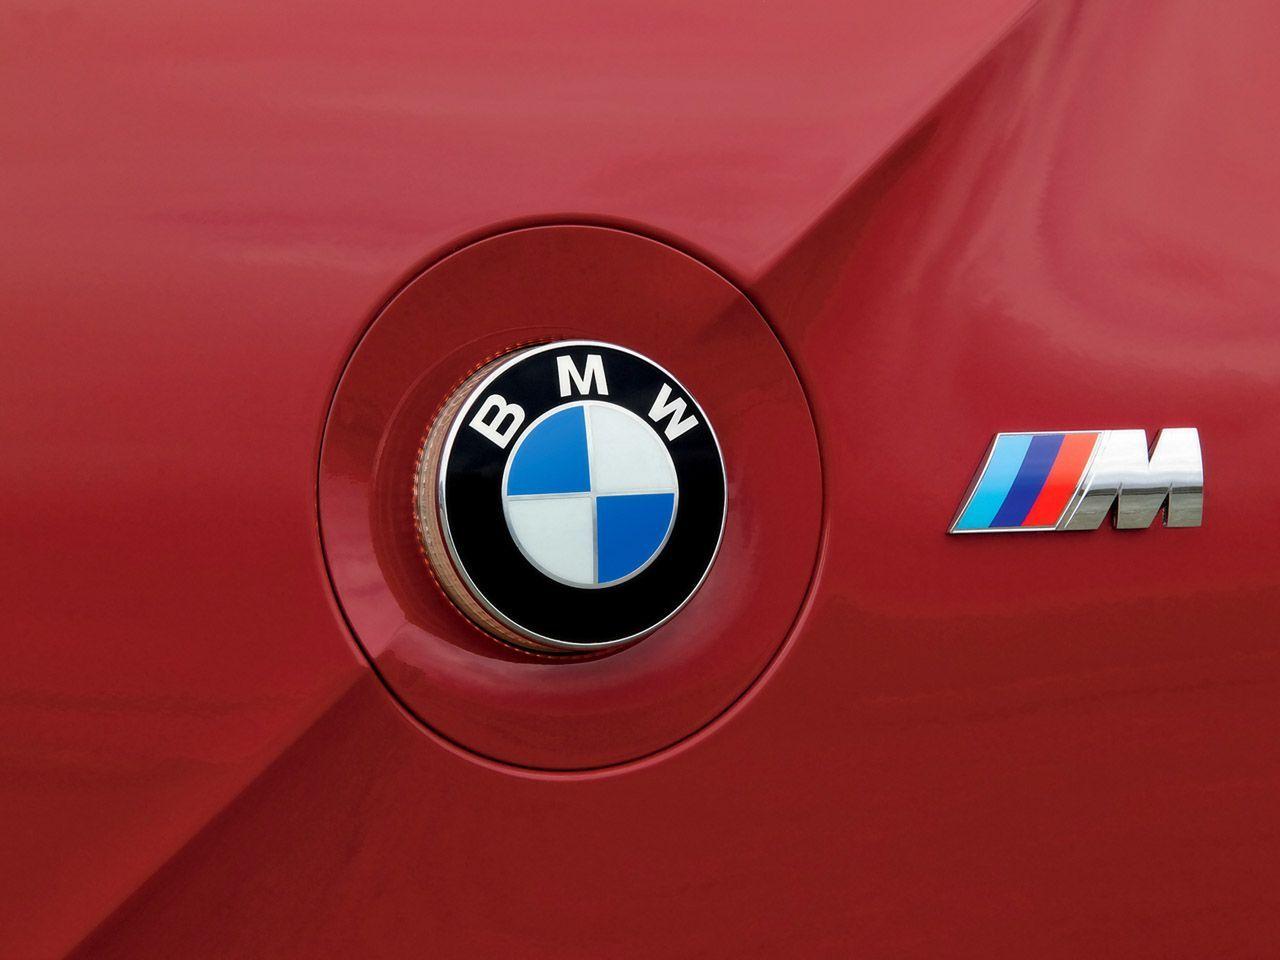 Z4 Logo - History: BMW ///M logo colors explained | Cars | Bmw z4, Bmw z4 m, Bmw